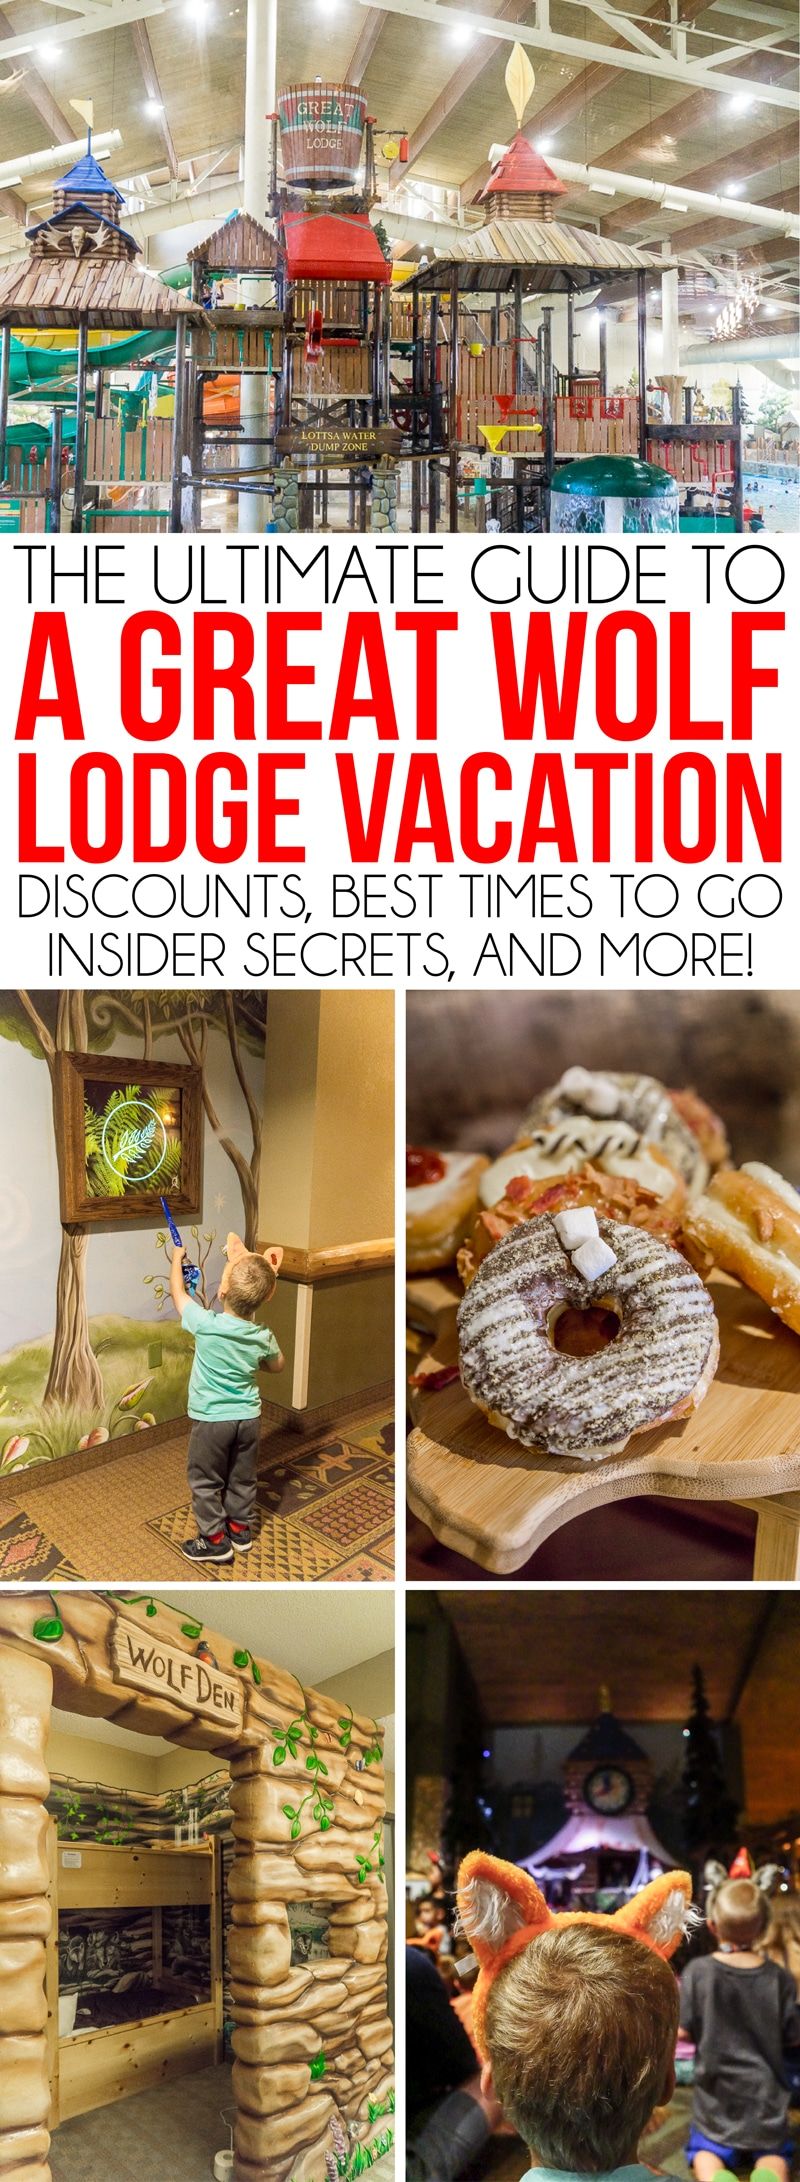 Great Wolf Lodge Grapevine е чудесно място за семейства с деца от всички възрасти